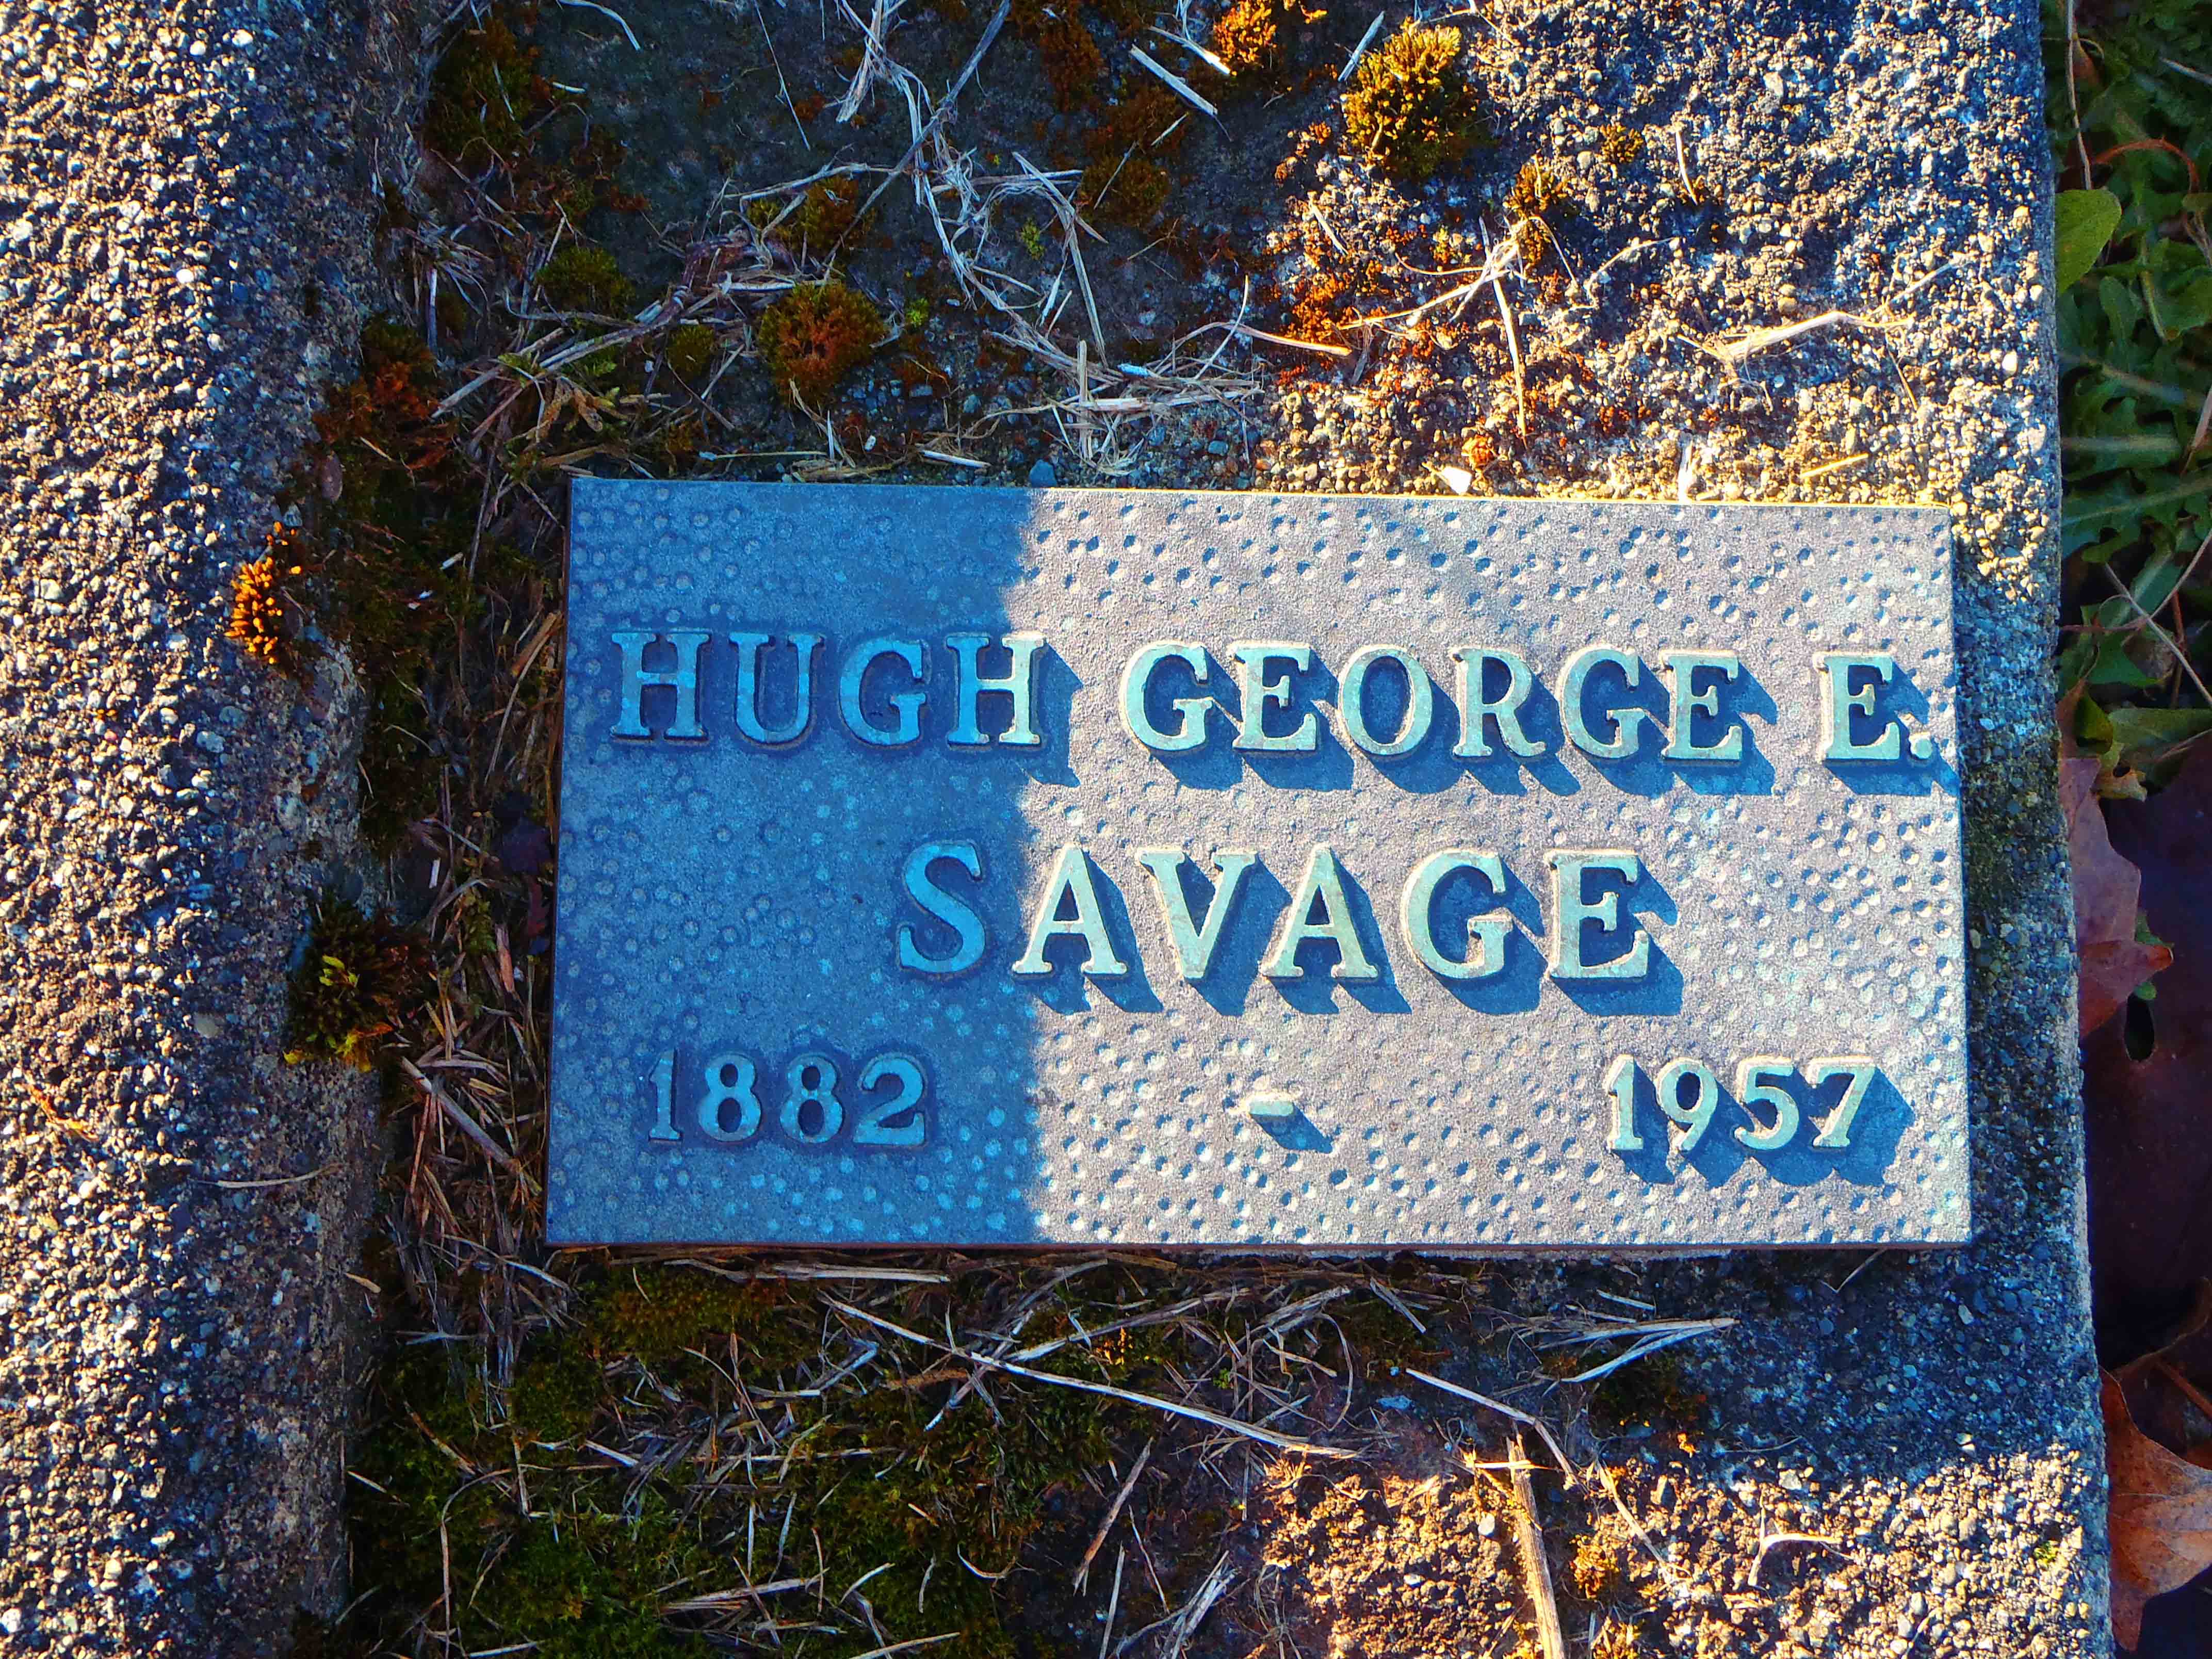 Hugh George savage tomb marker